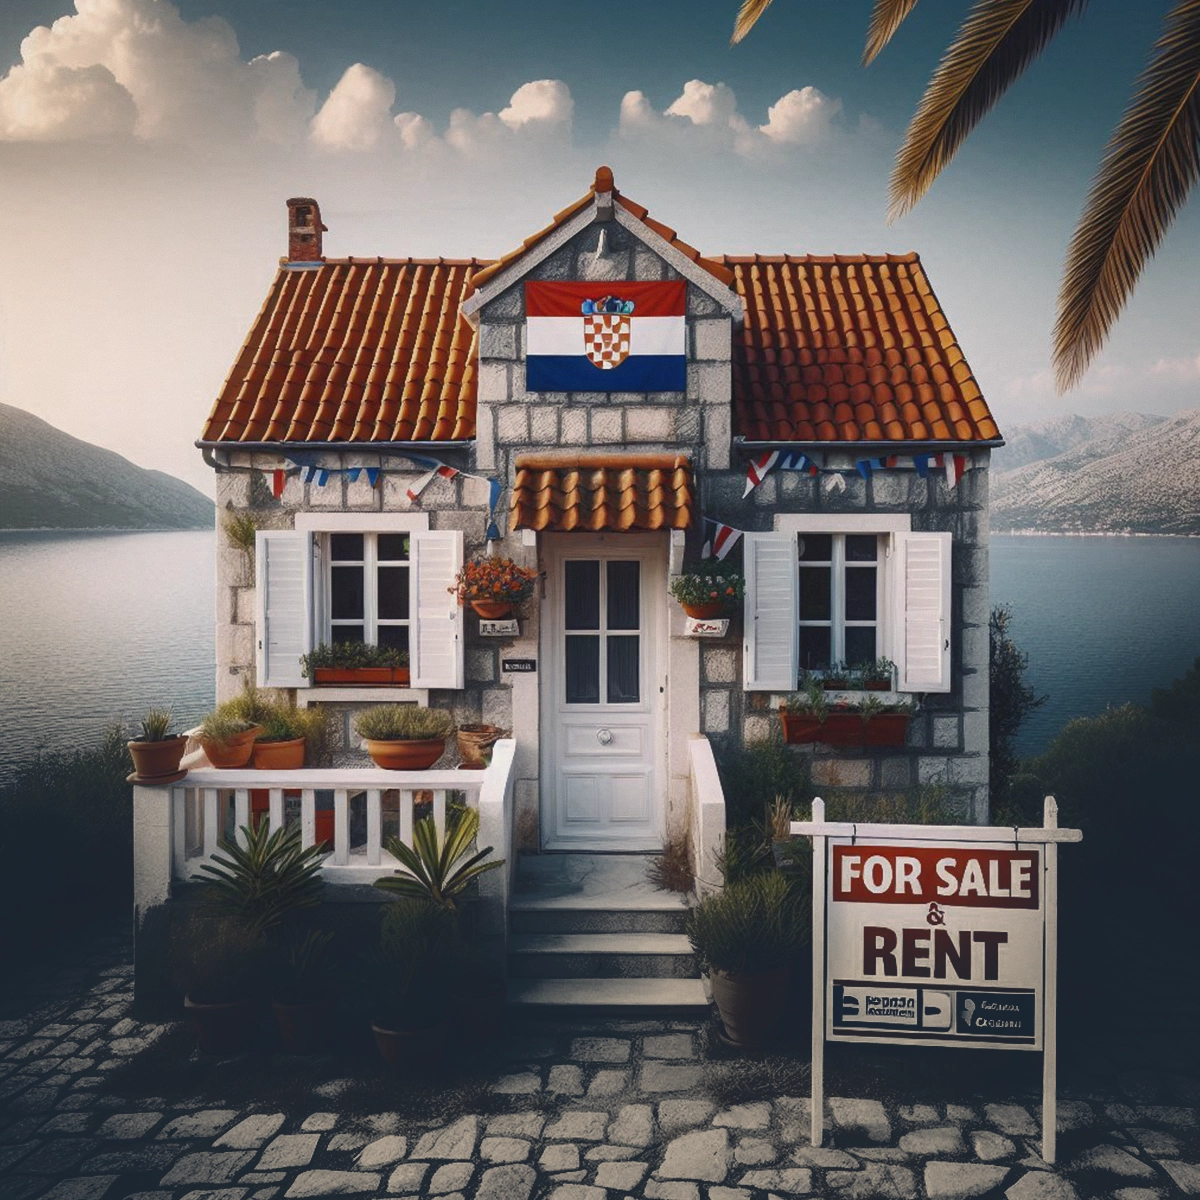 اجاره و خرید ملک در کرواسی